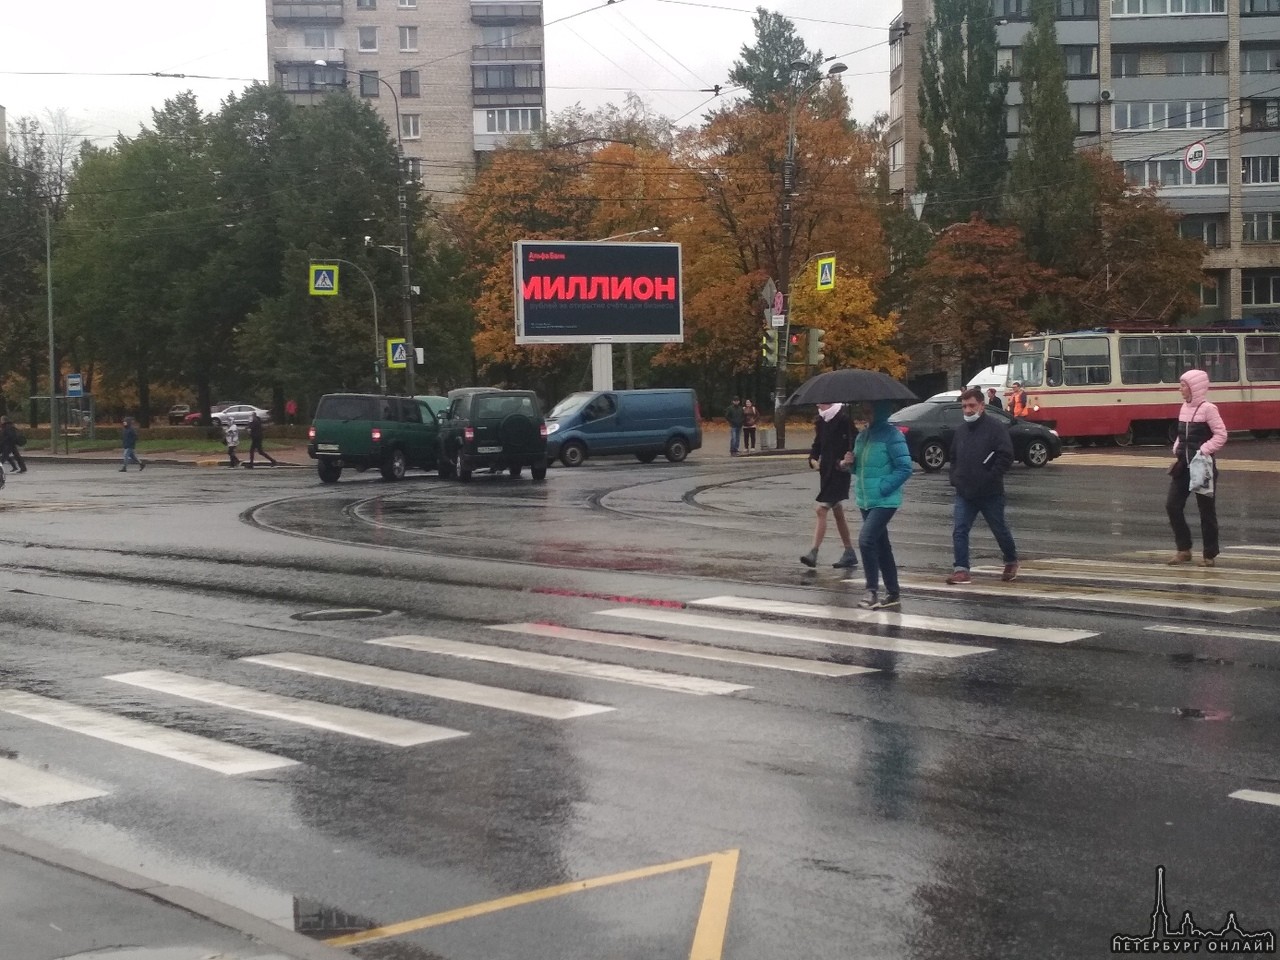 Два УАЗ Патриот притерлись прямо на трамвайных путях, на углу Пискаревского и Полюстровского. Трамва...